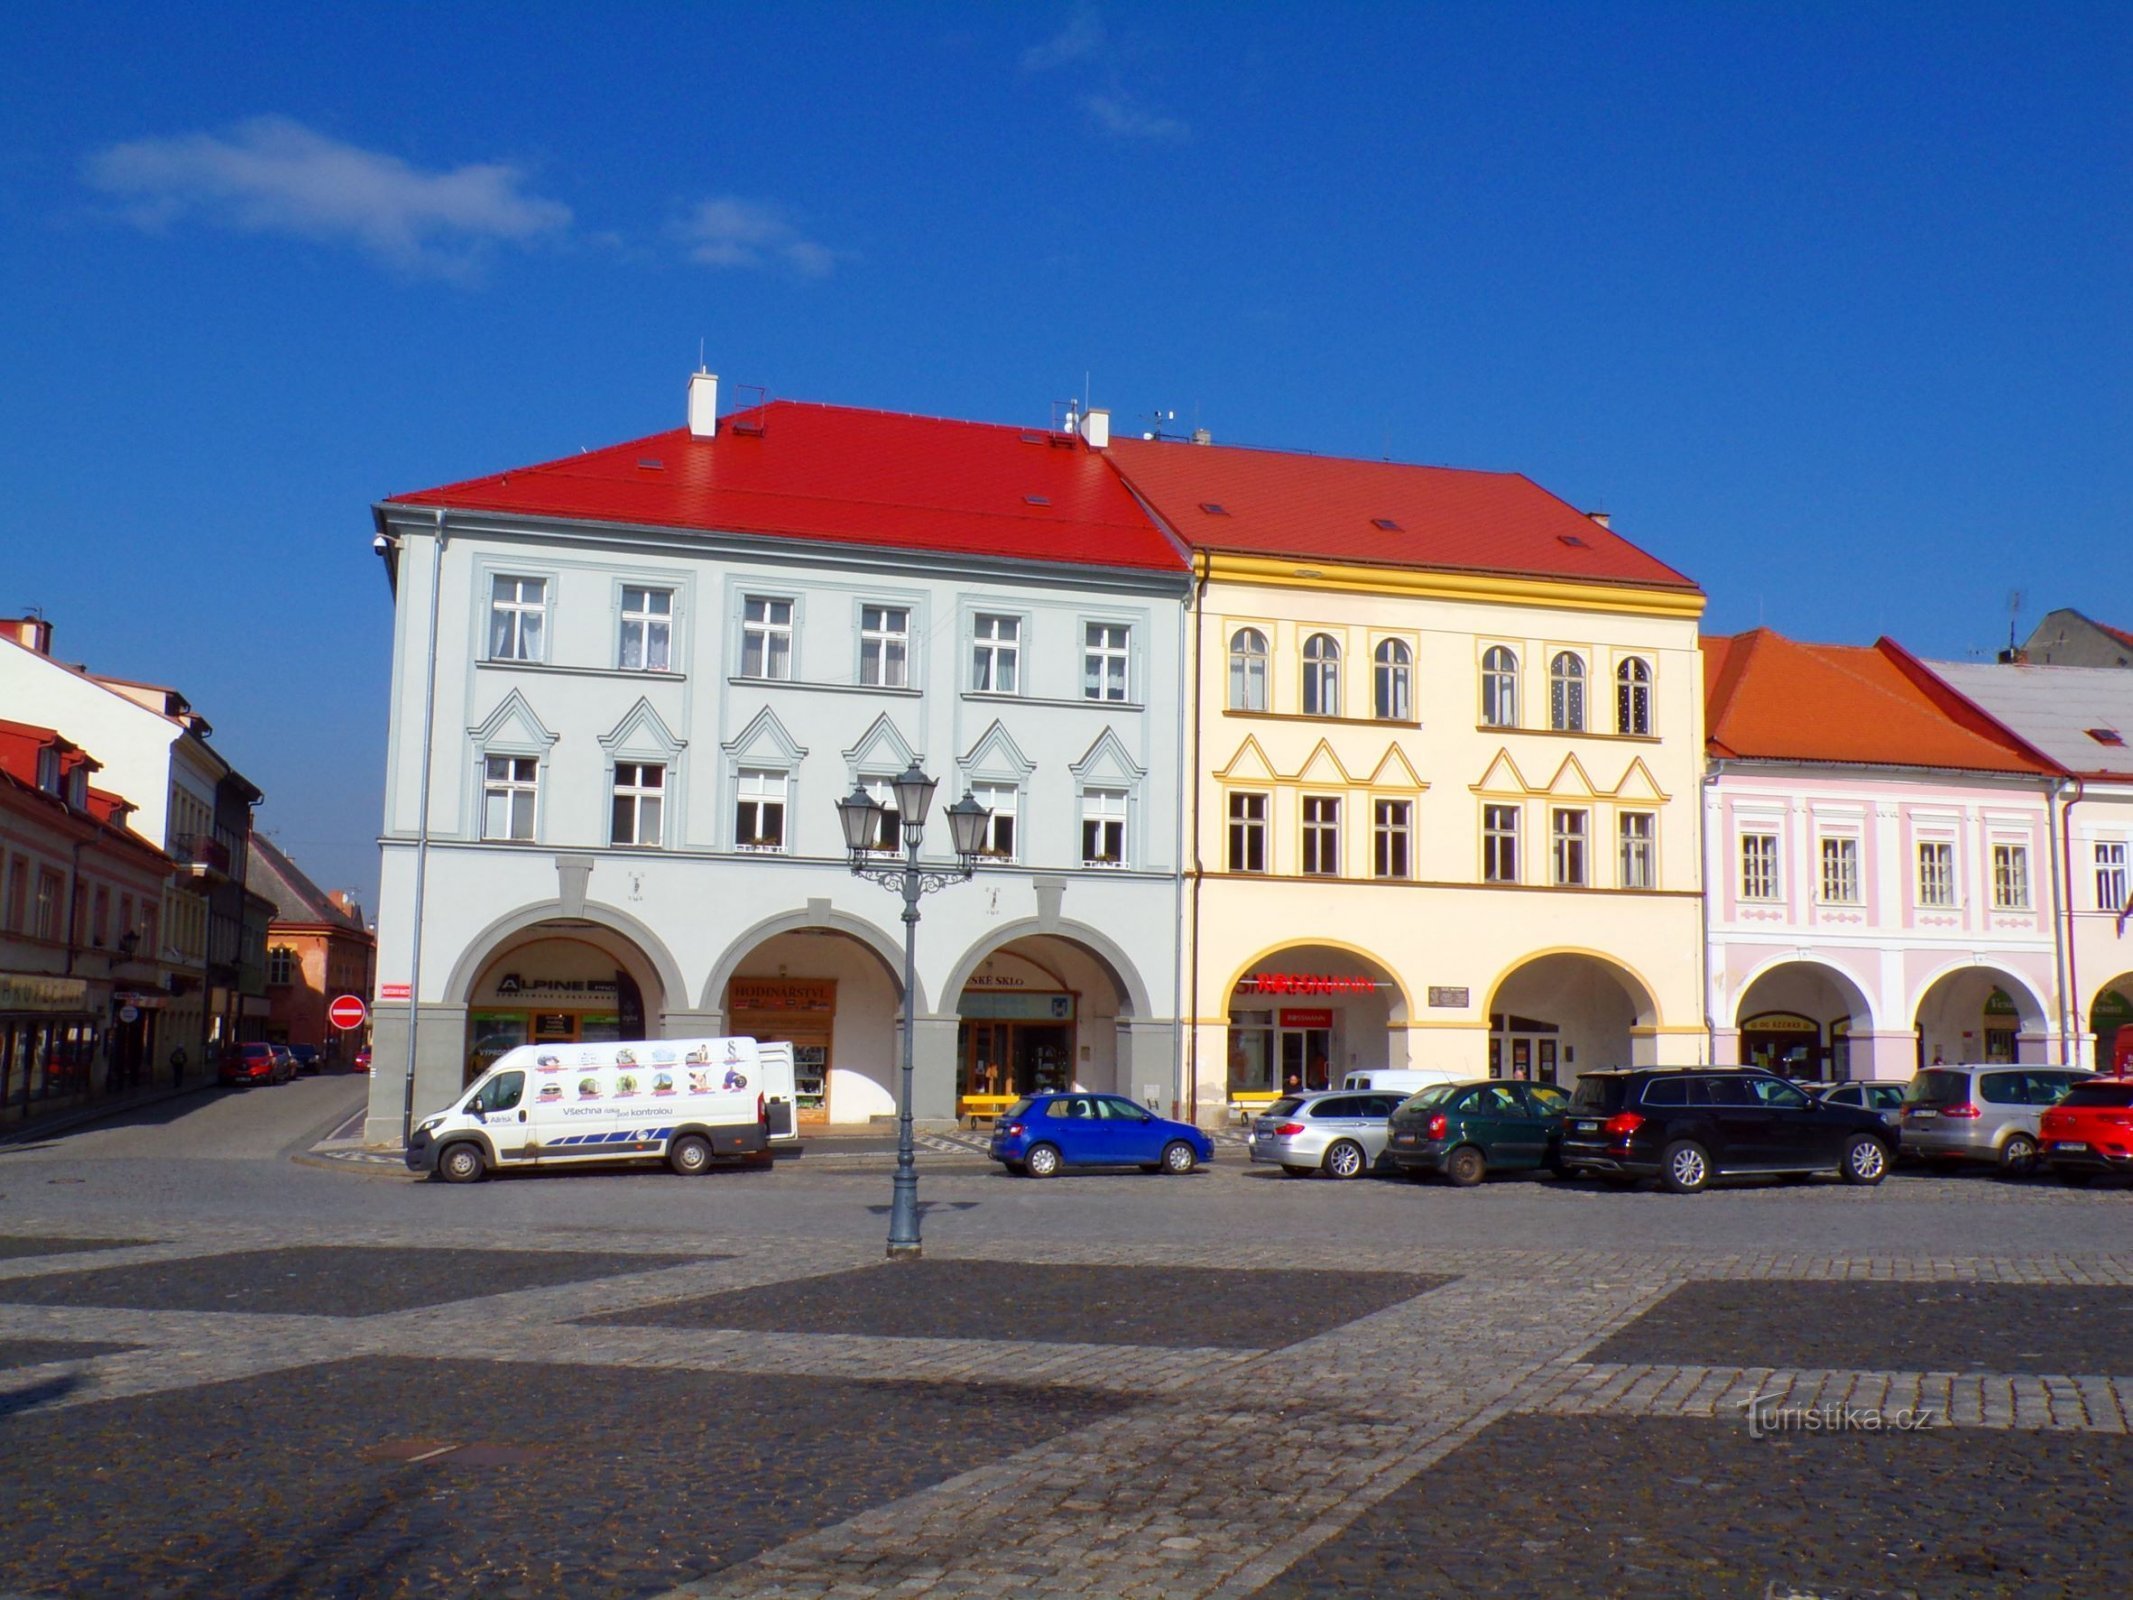 Palackého nr. 73 și Valdštejnovo náměstí nr. 74 (Jičín, 3.3.2022)